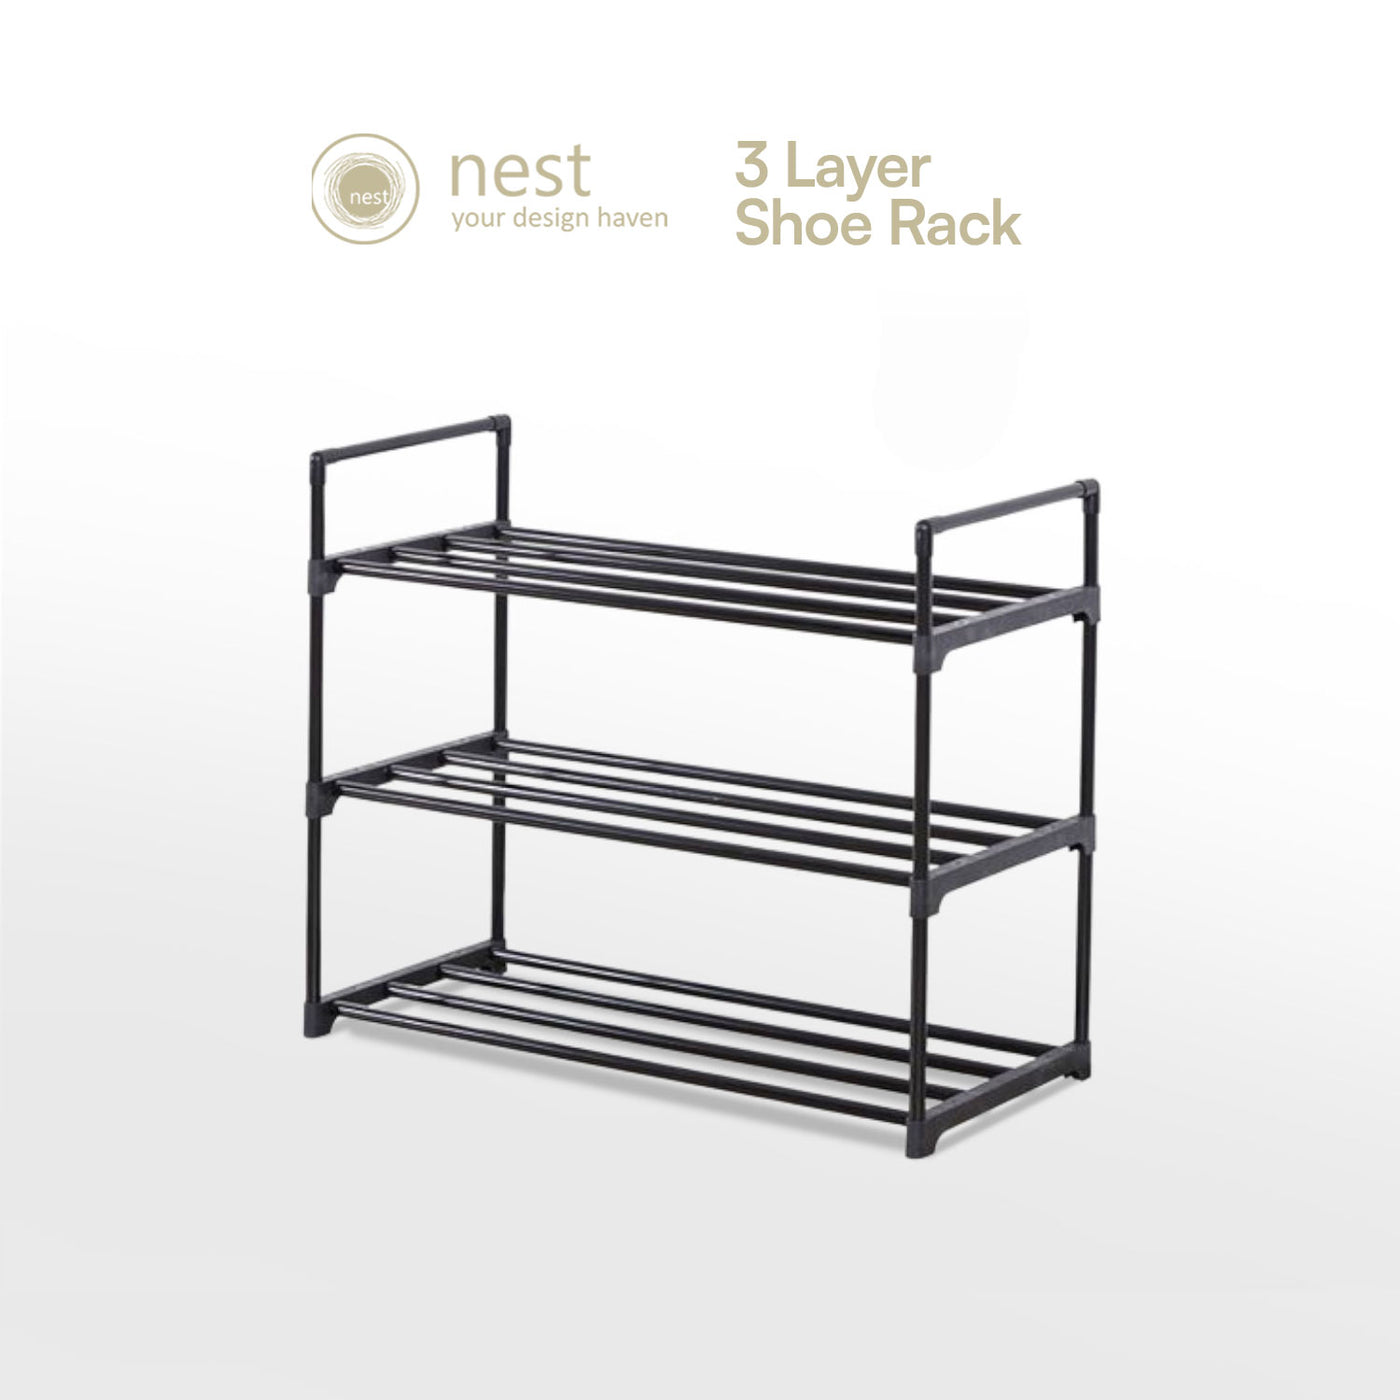 NEST DESIGN LAB Premium 3L Shoe Rack 3 Layer